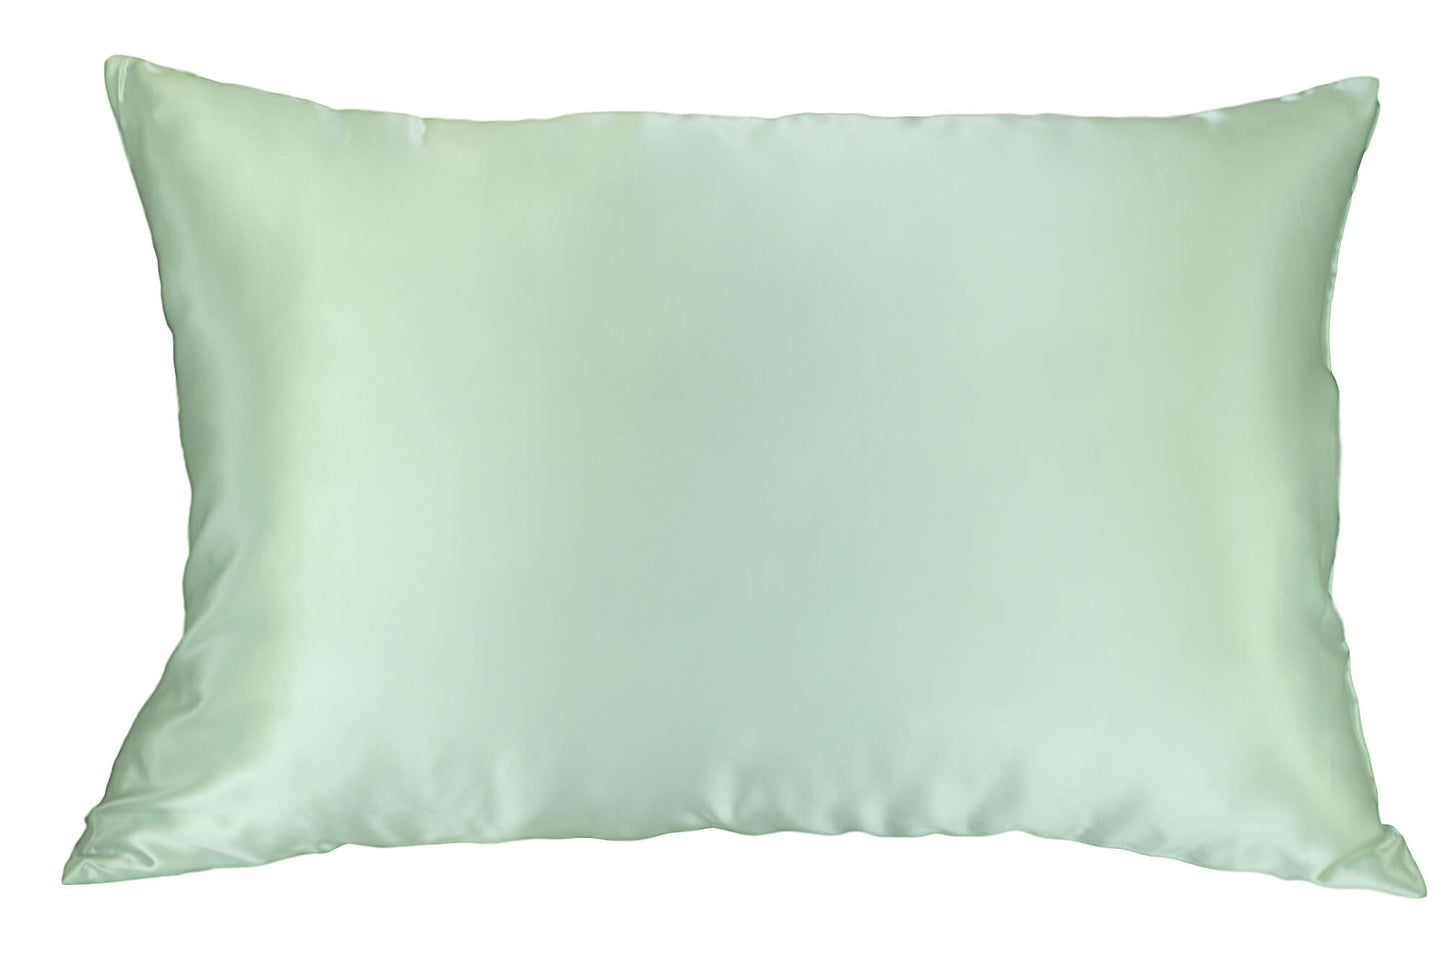 Mint green Celestial silk pillowcase 25 mm mulberry silk pillowcase 